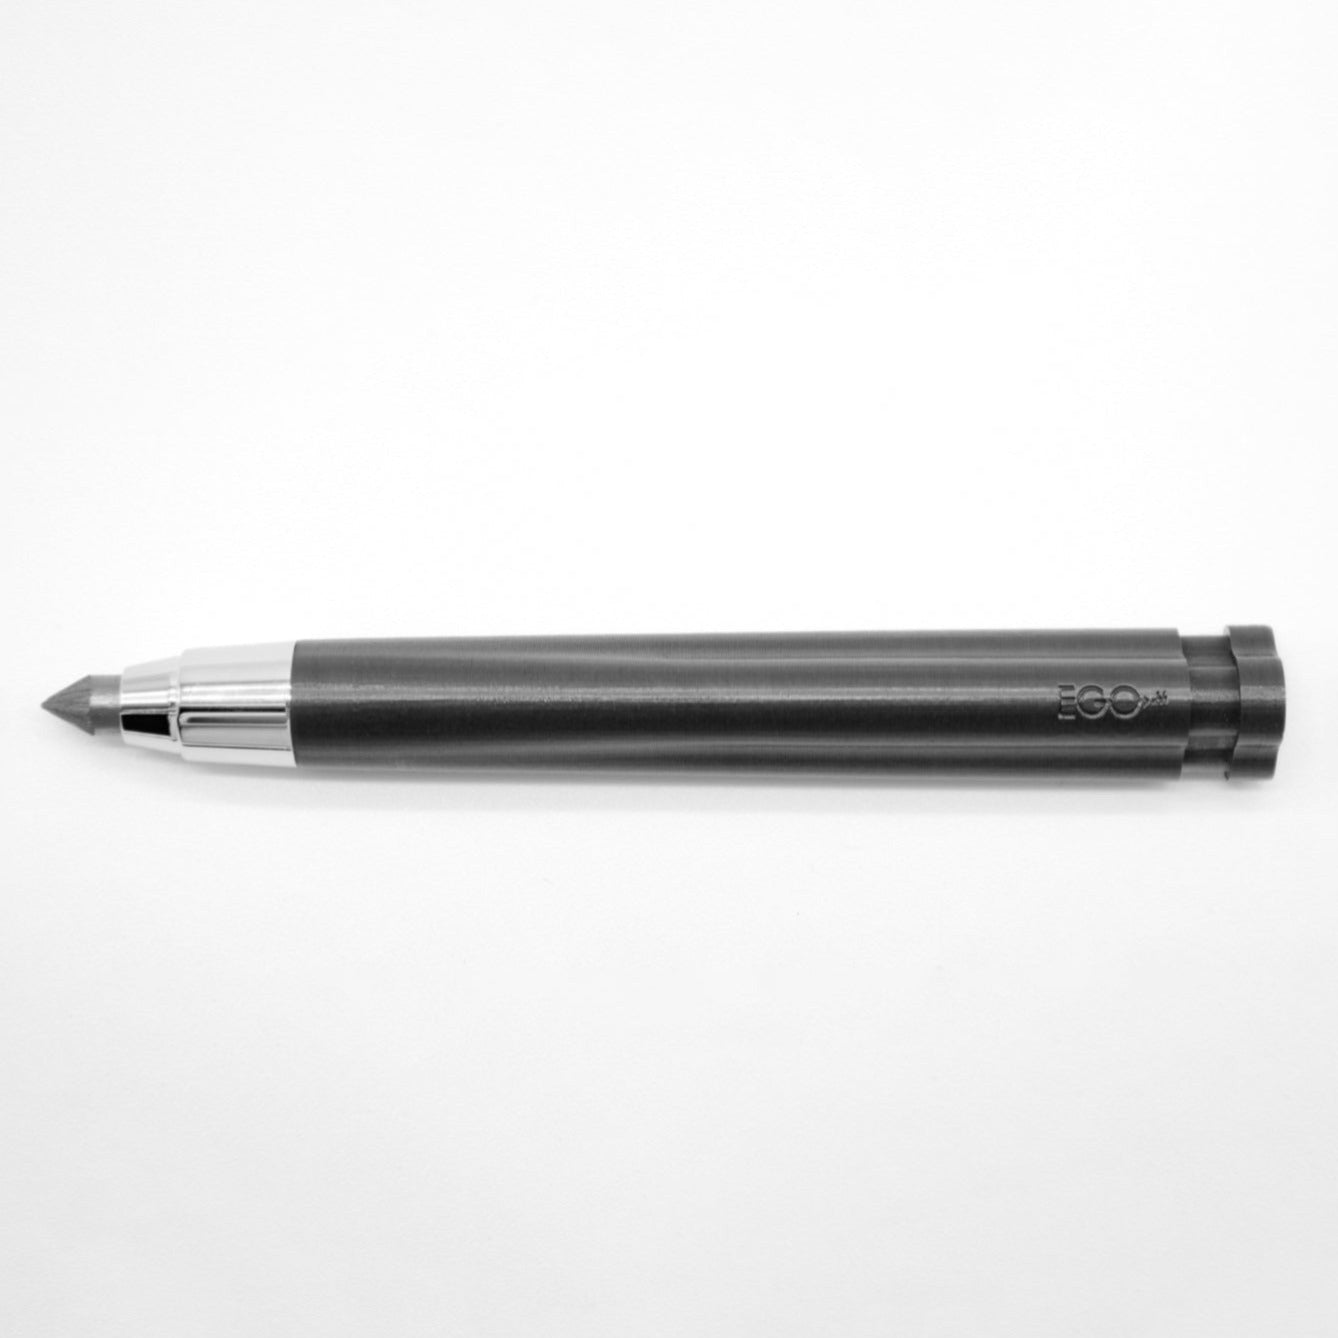 EGO.M - Achille Castiglione - CENTO3 - multifunction art pencil